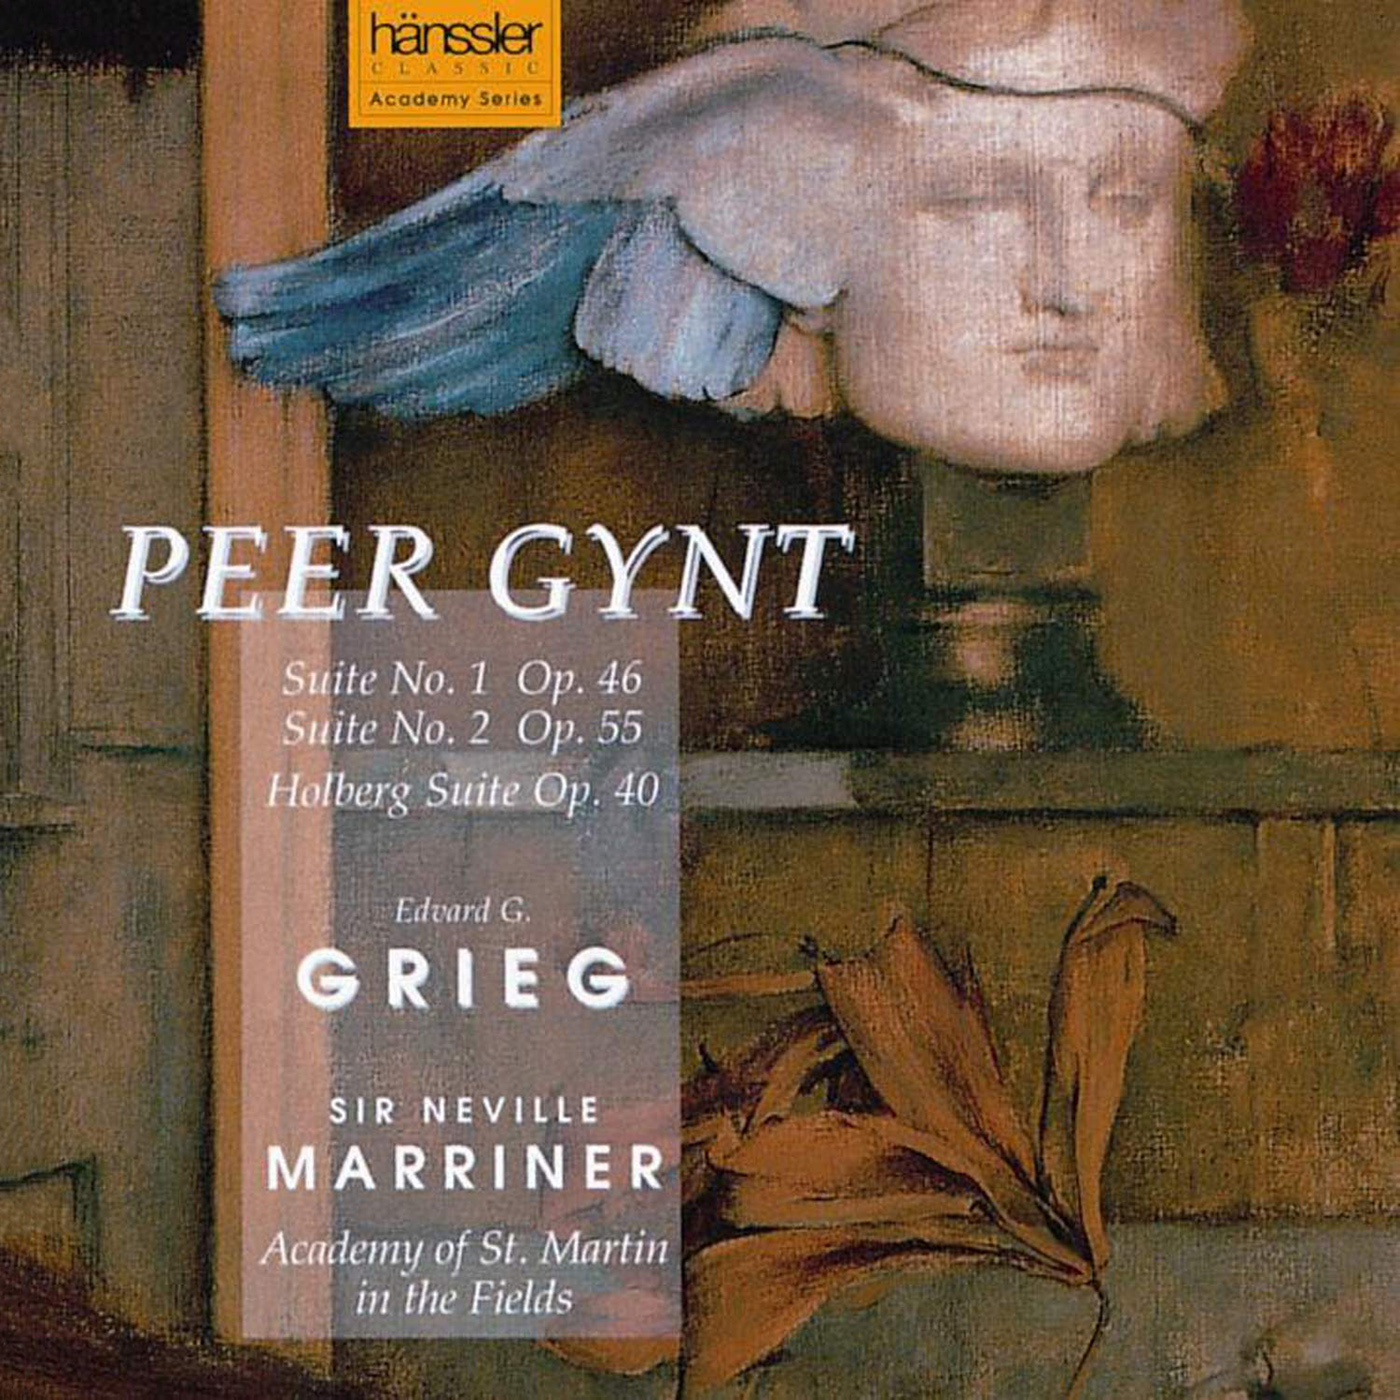 Peer Gynt Suite No. 1, Op. 46: II. Death of Aase